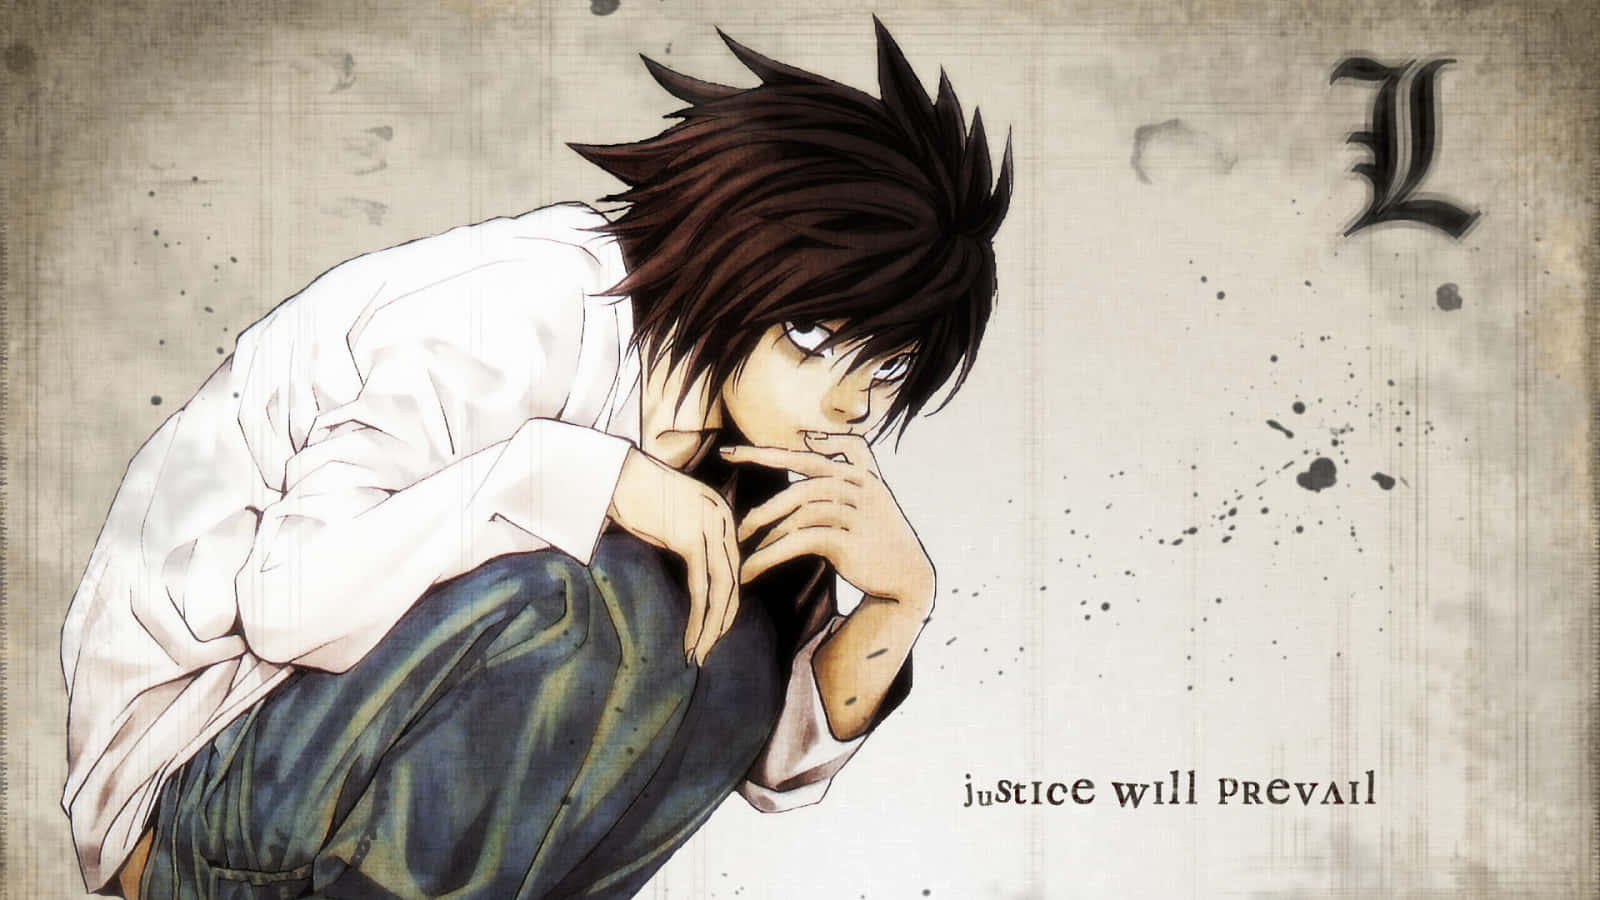 Imagemuma Visão Detalhada De Ryuk, O Shinigami De Death Note.